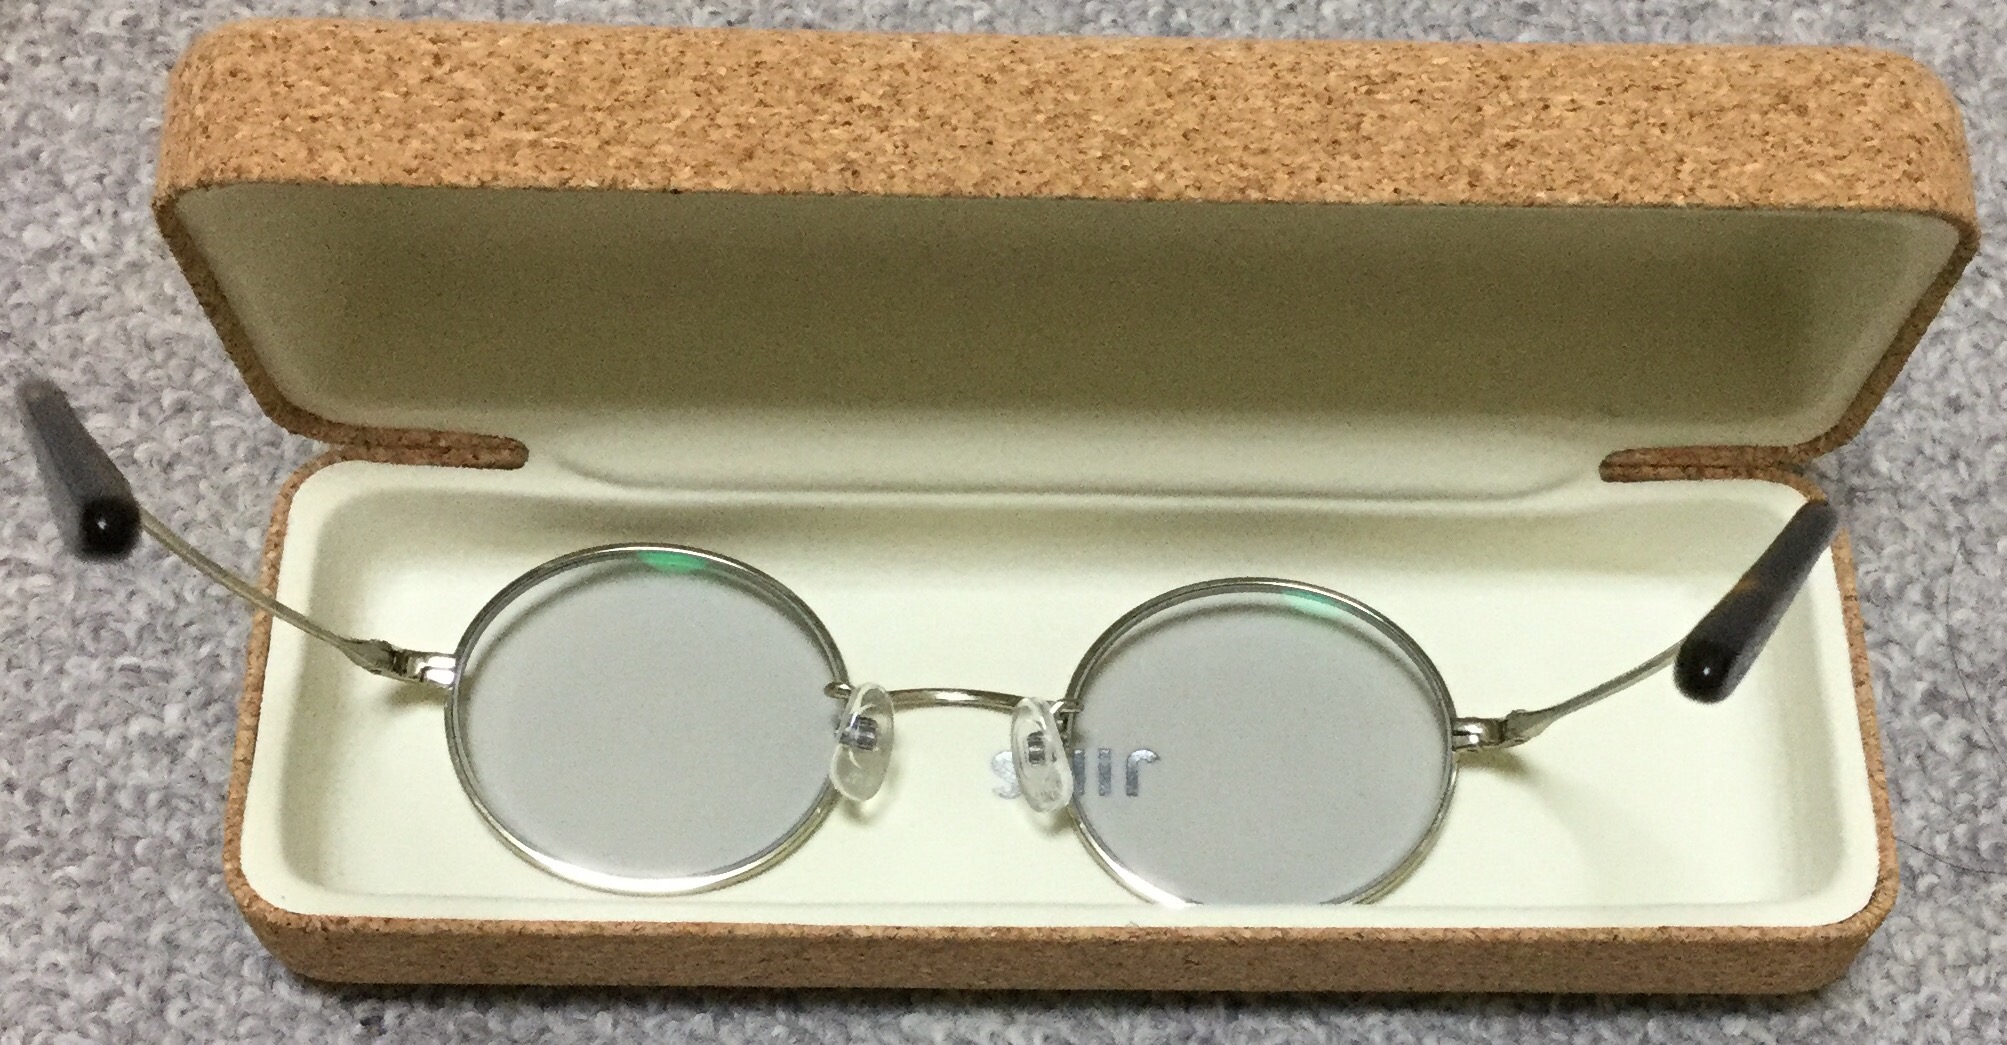 Jinsで坊主に似合うメガネ買ってみた カラーコントロール